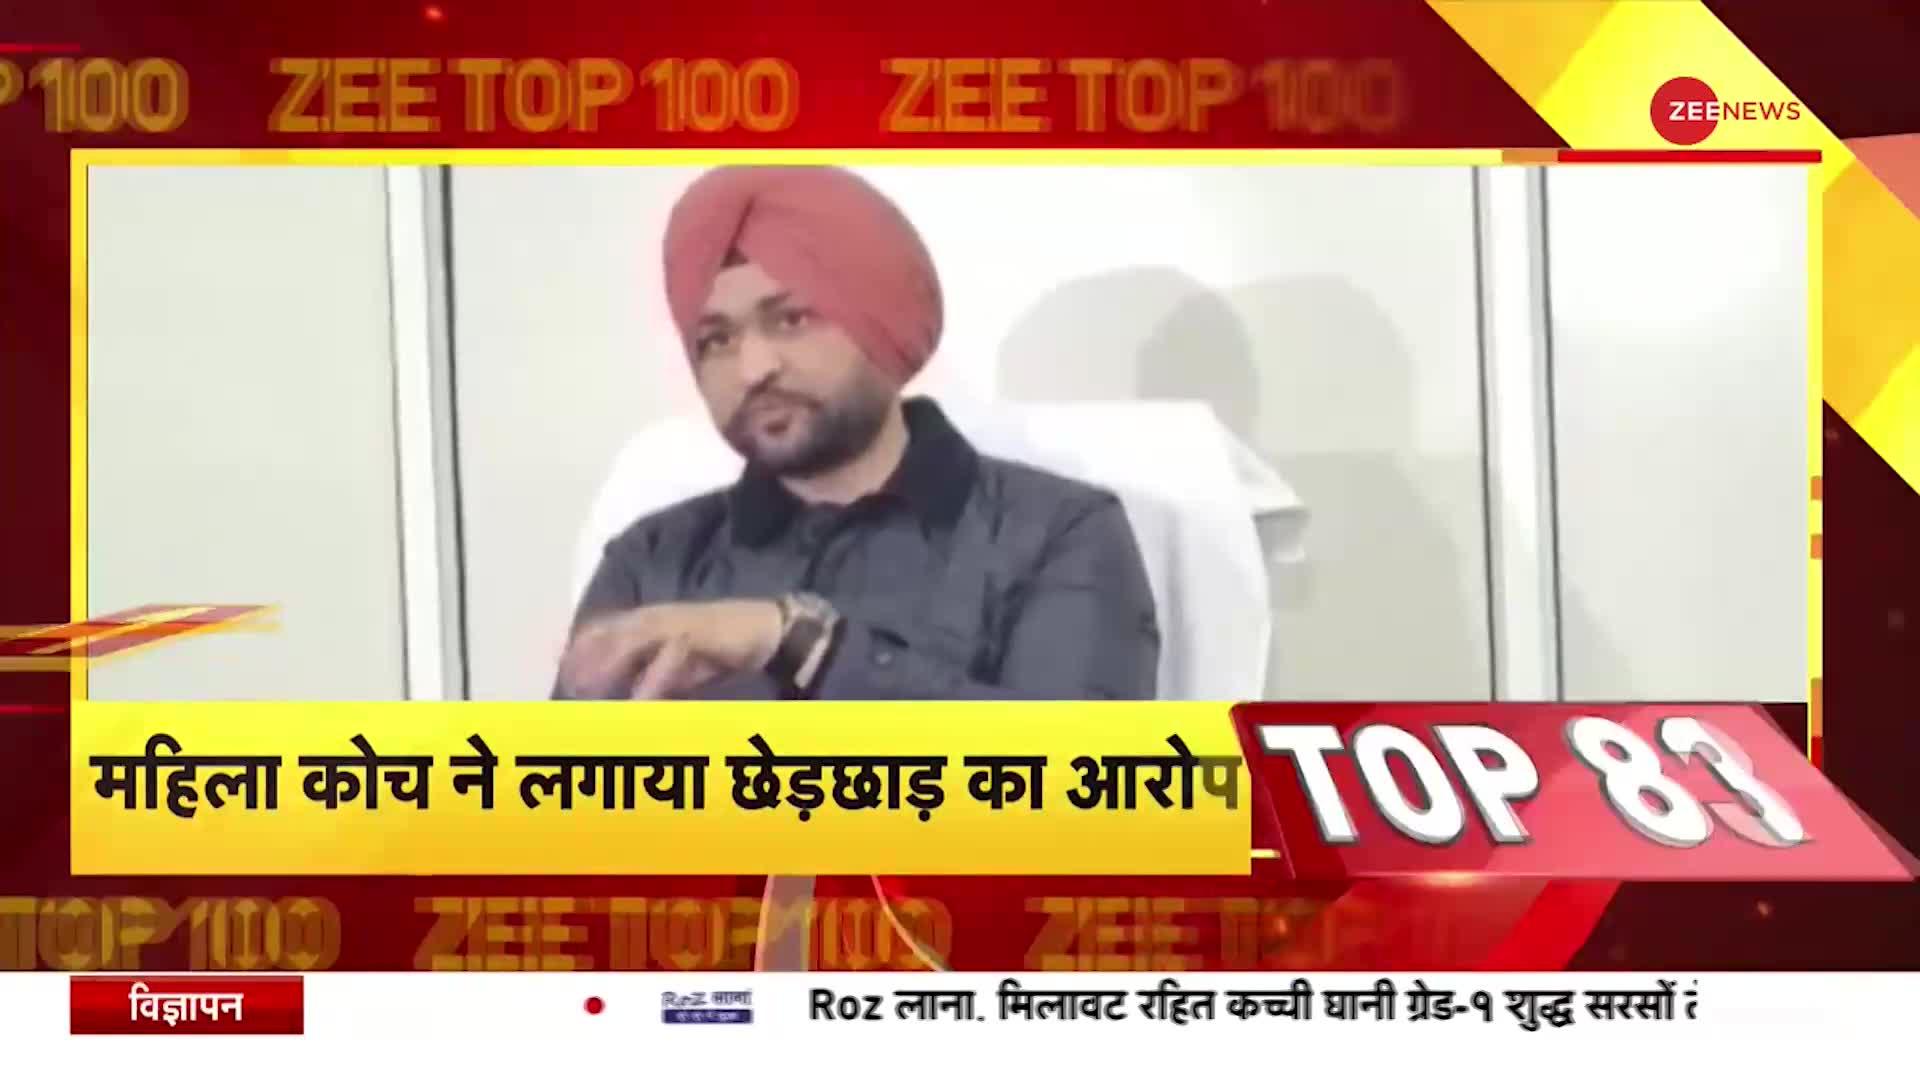 Zee Top 100: हरियाणा के खेल मंत्री संदीप सिंह पर FIR